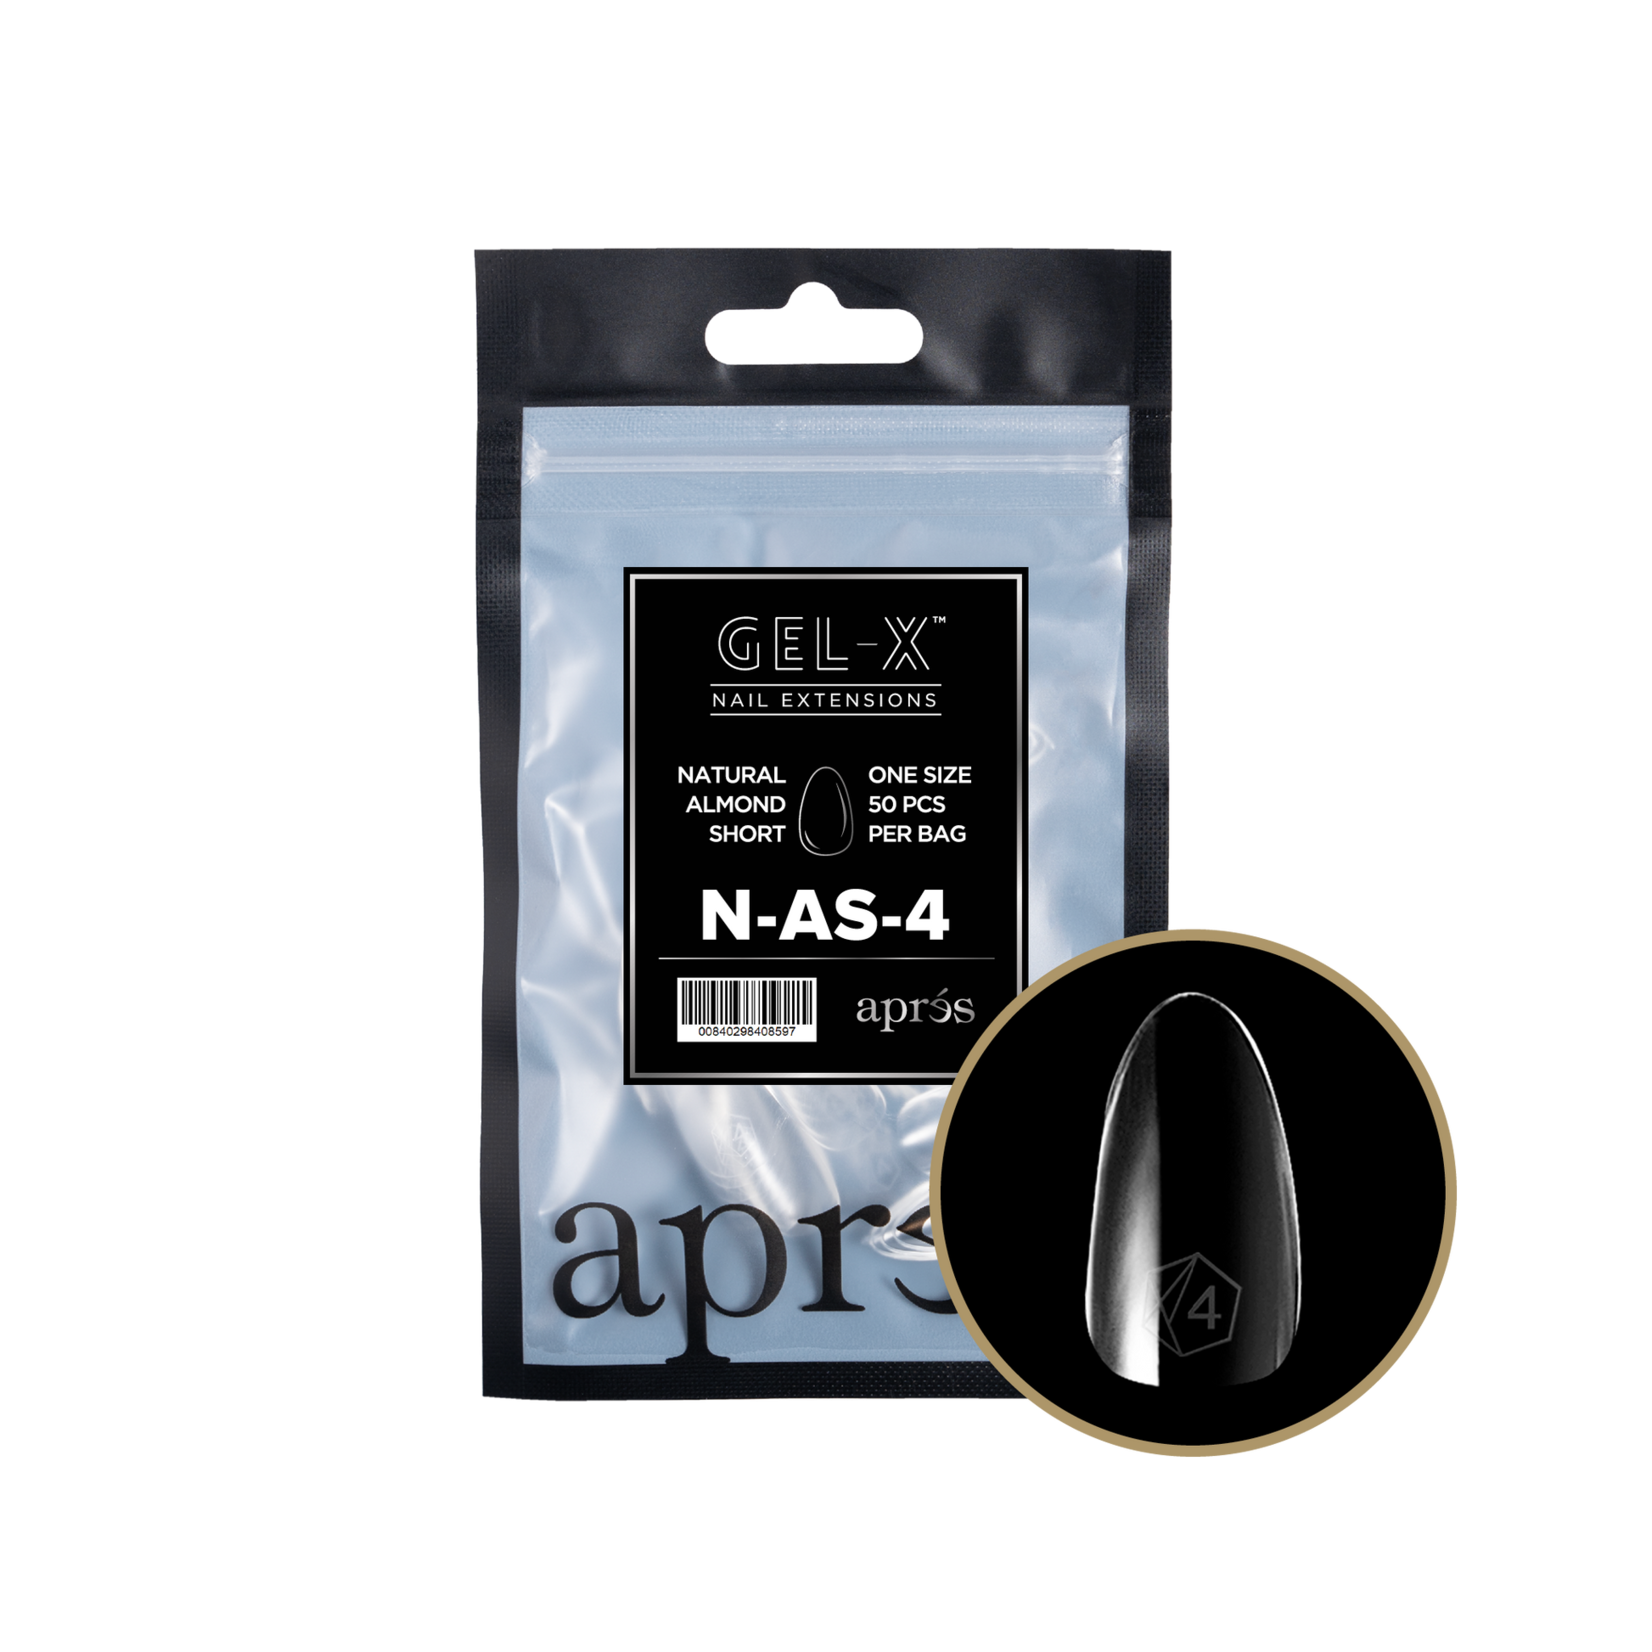 Apres Apres - Refill Bags - Natural - Almond Short - #4